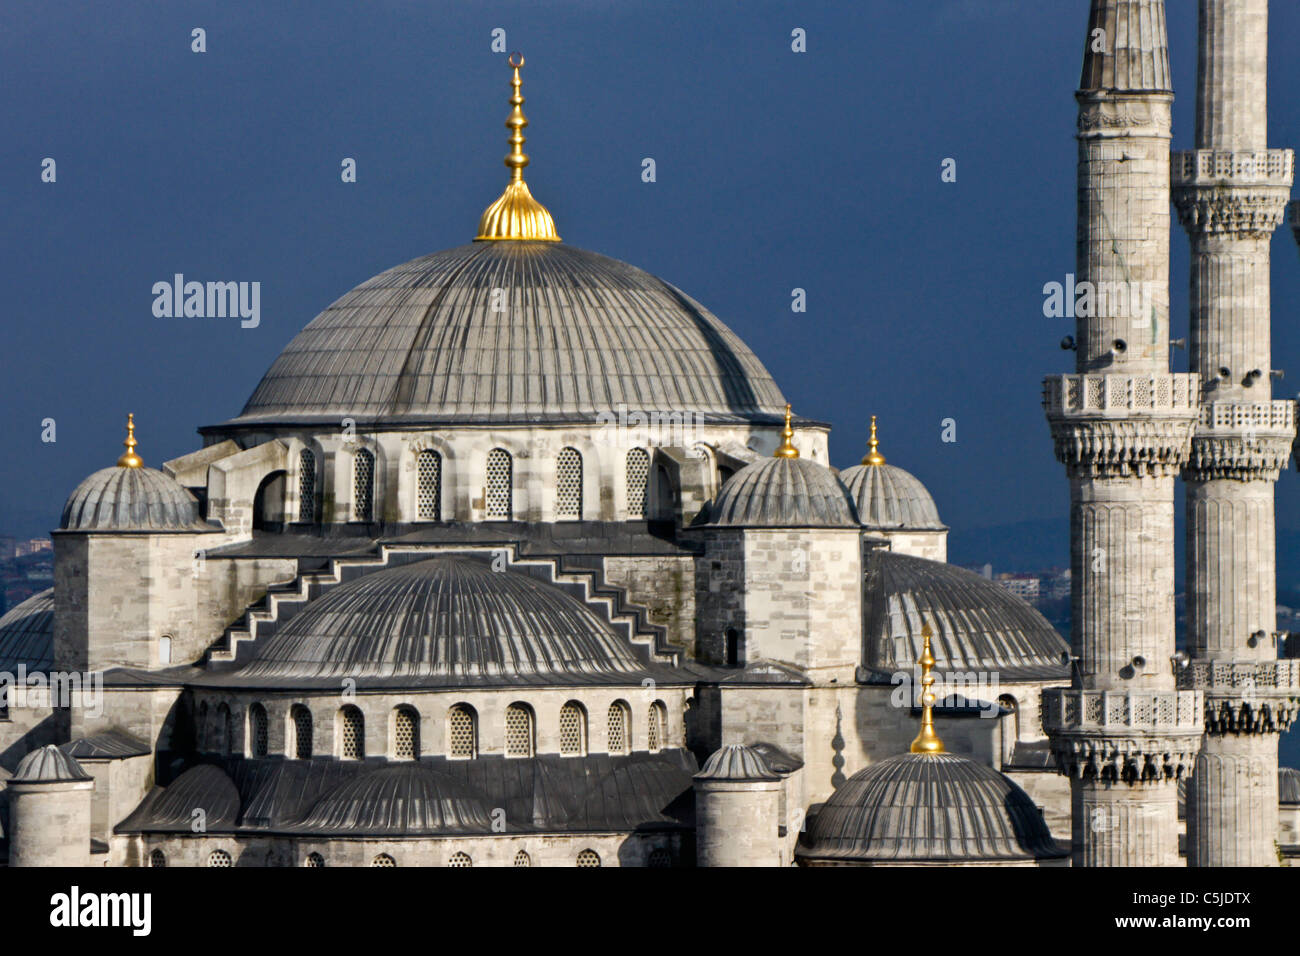 Les dômes et les minarets de la Mosquée Bleue (Sultanahmet Camii), Istanbul, Turquie Banque D'Images